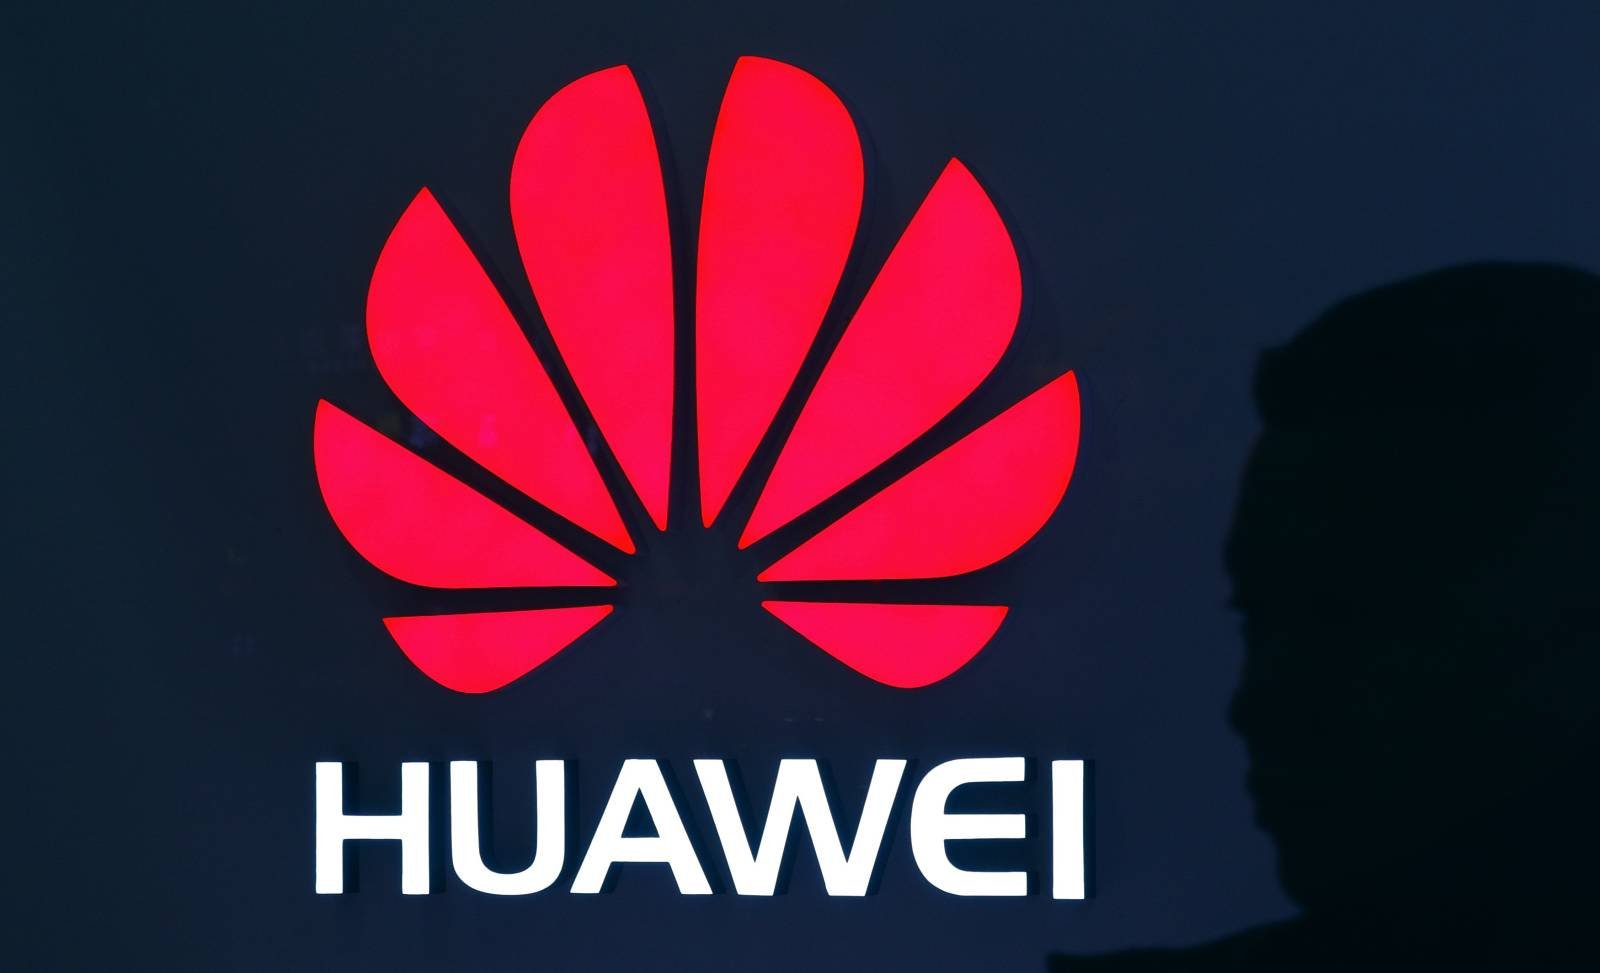 Huawei producerer i Frankrig